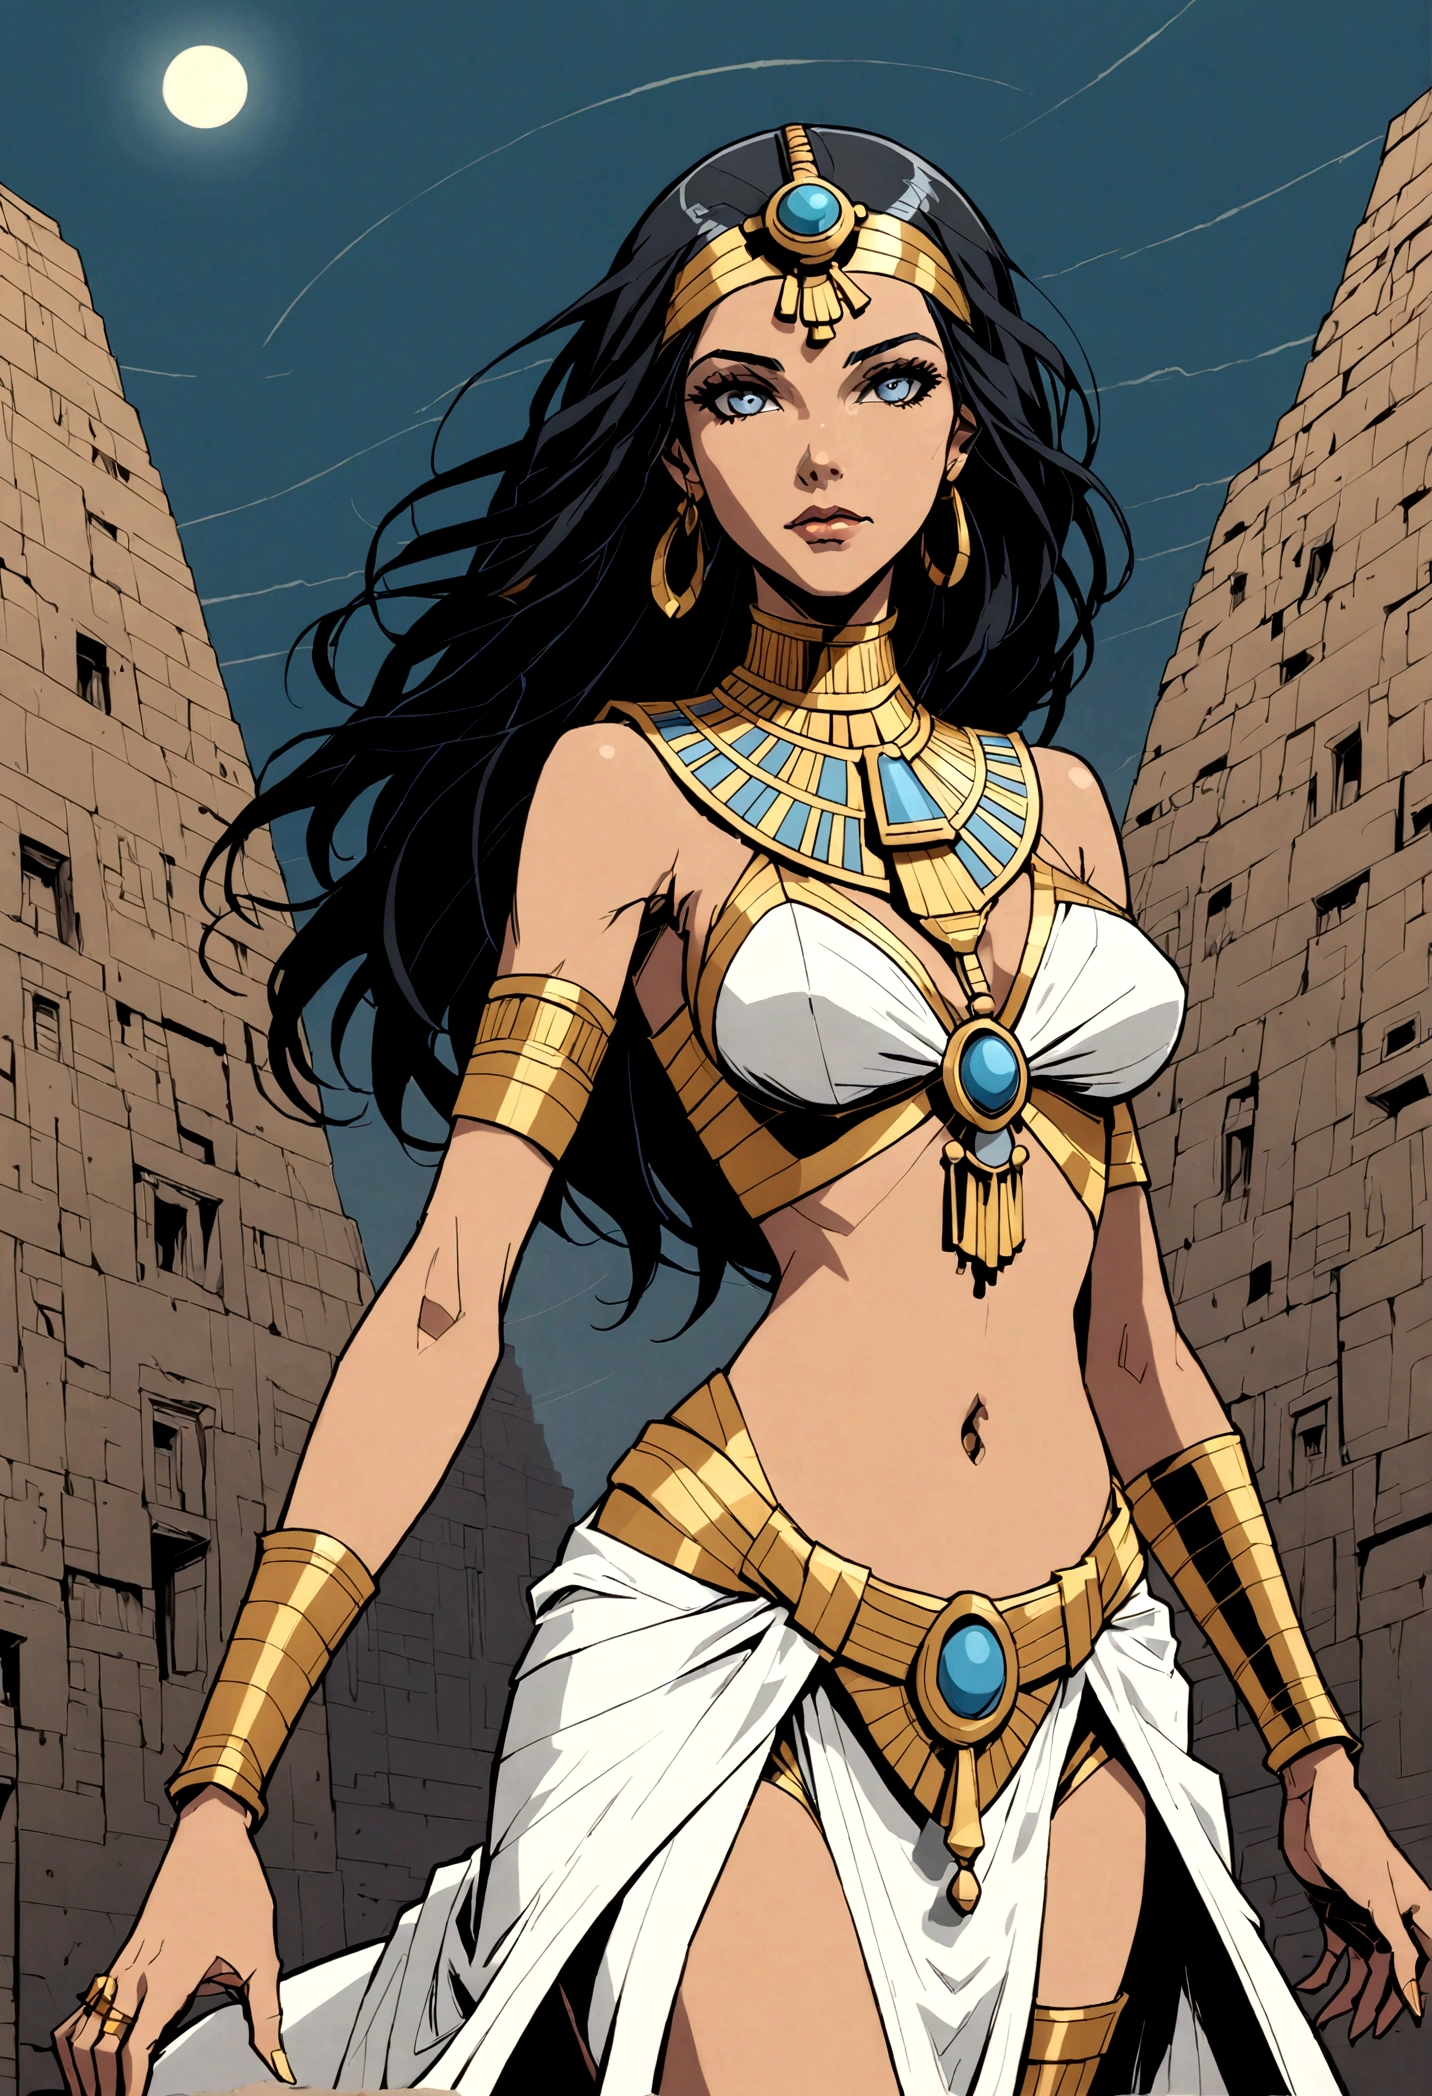 漫畫風格的圖像, 奇蹟. 一位埃及女性的全身透視 ((銀色和金色的衣服, 黑色長髮，有瀏海, 顏色鮮豔的淺藍色眼睛)) (埃及風格的頭上裝飾). 埃及風景, 黑暗, 陰天, 暗明暗對比, 緊張的氣氛